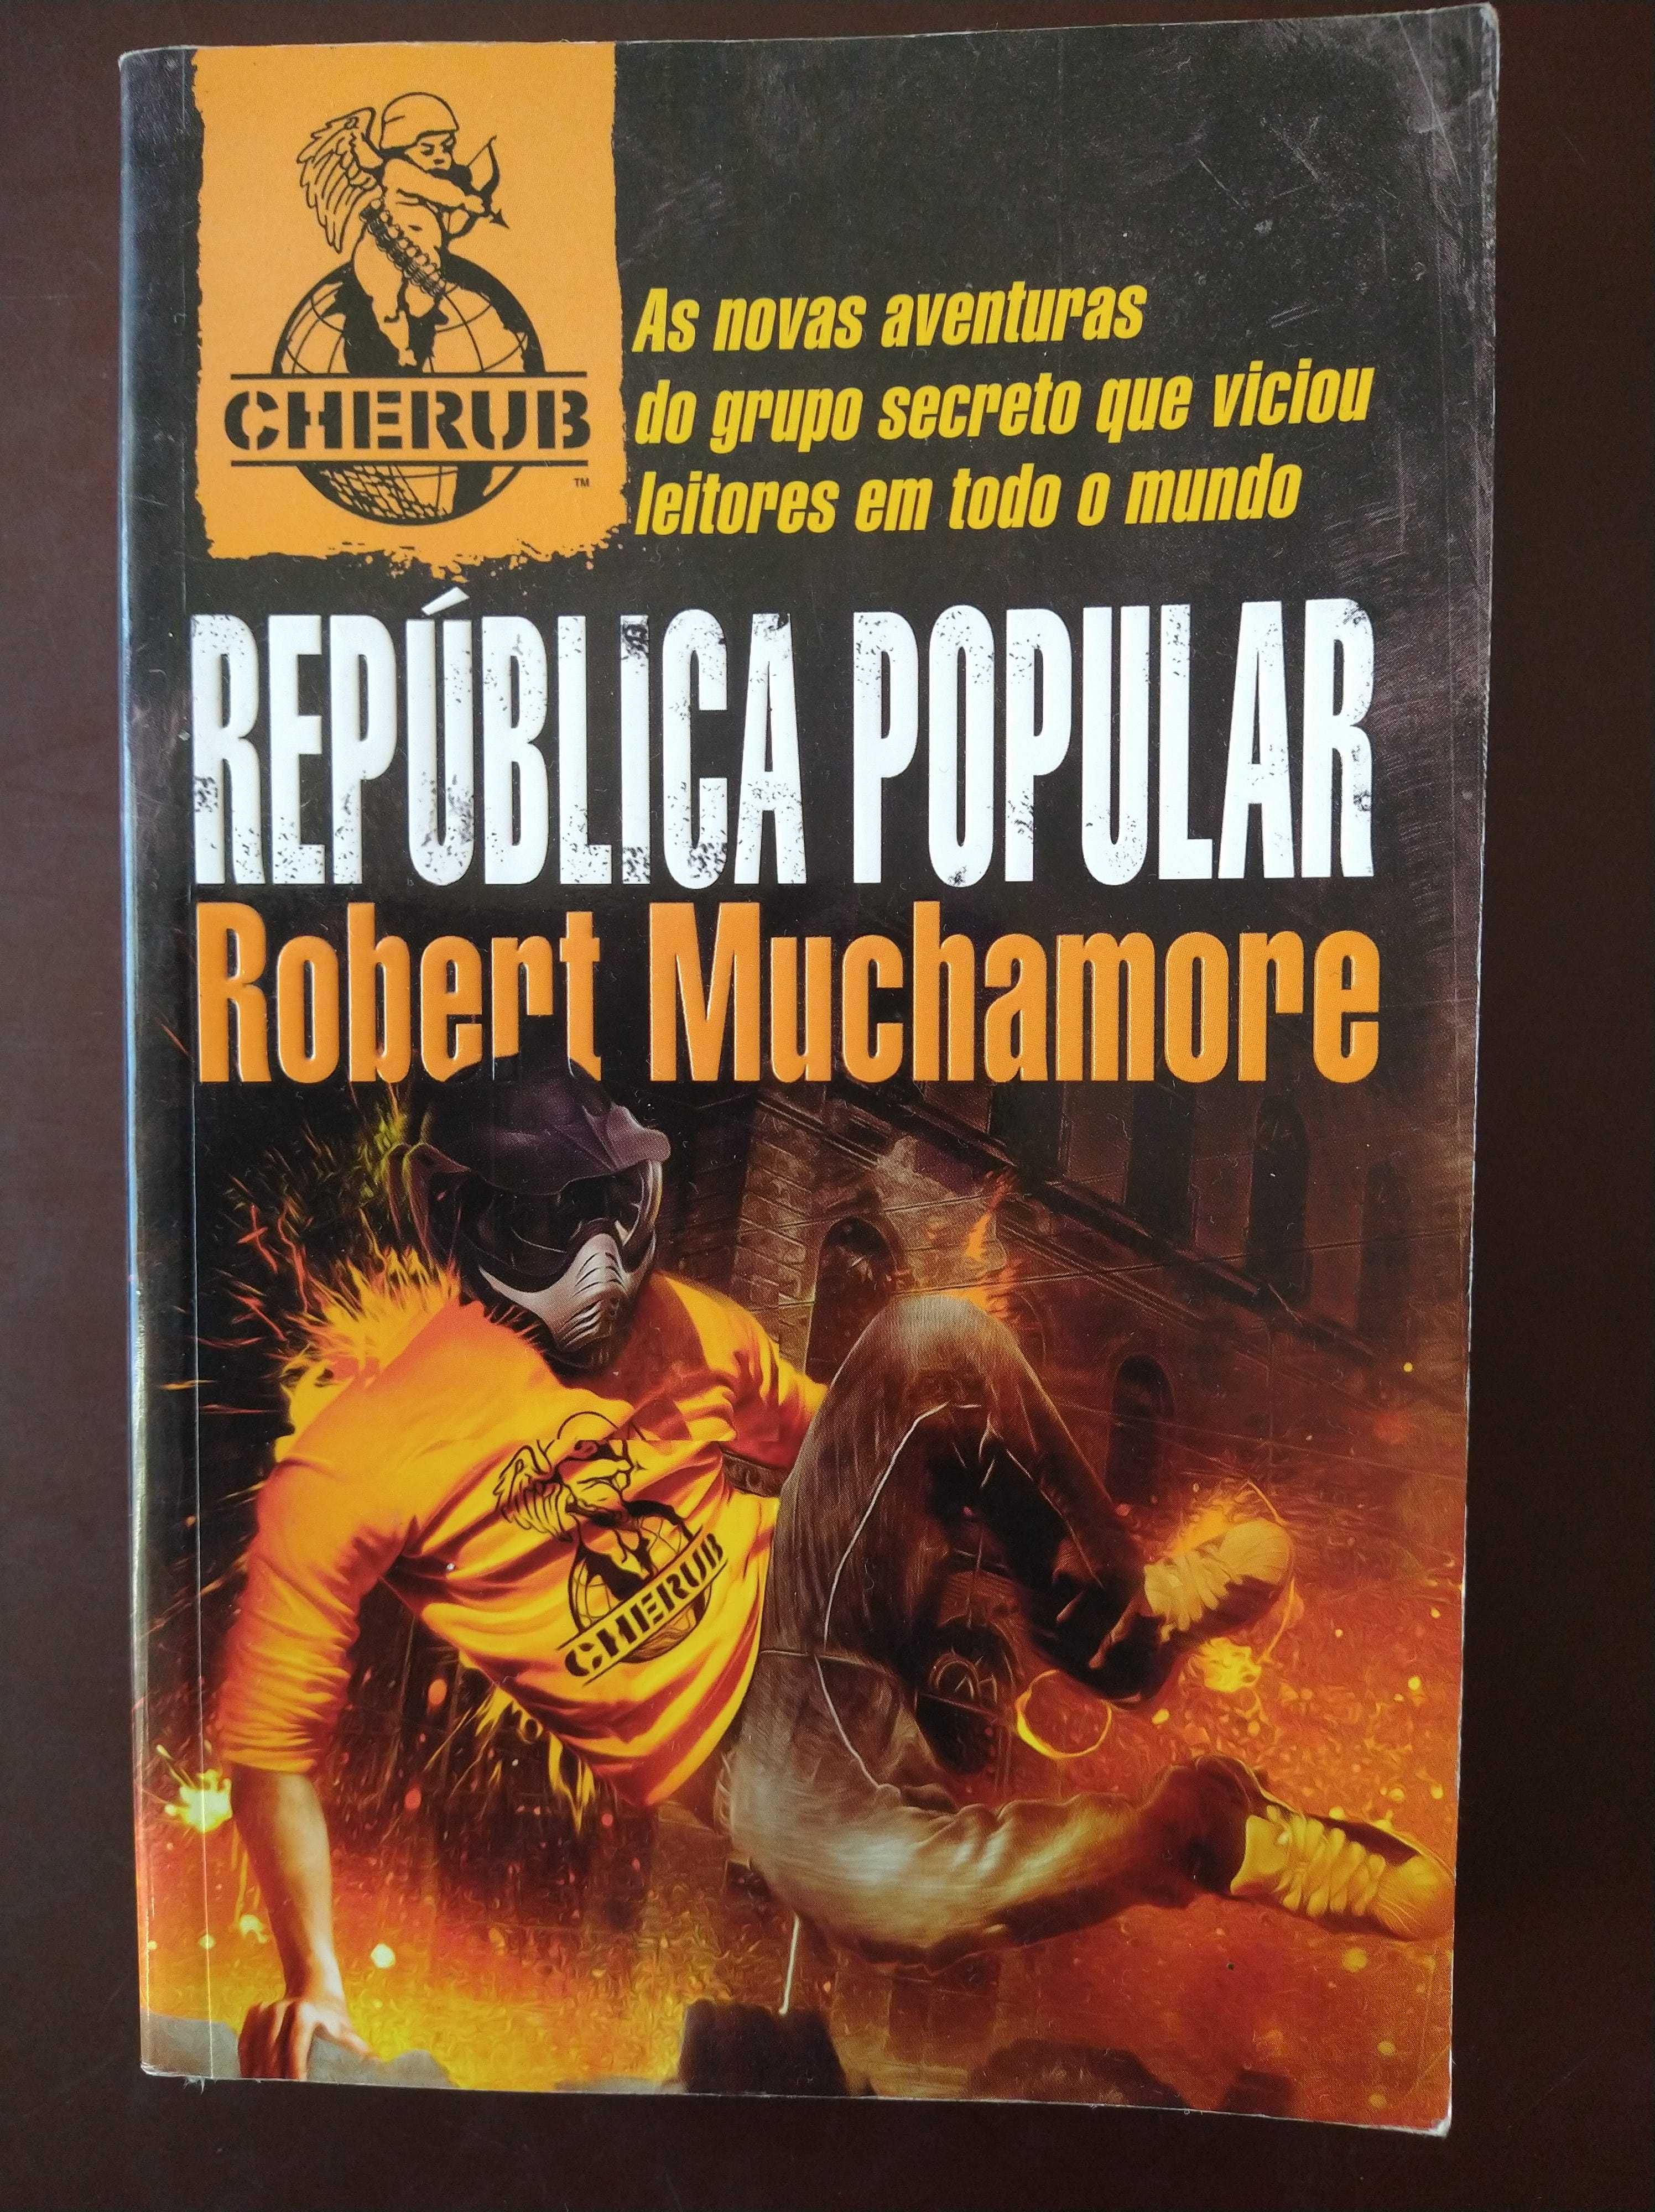 Cherub - República popular - Robert Muchamore